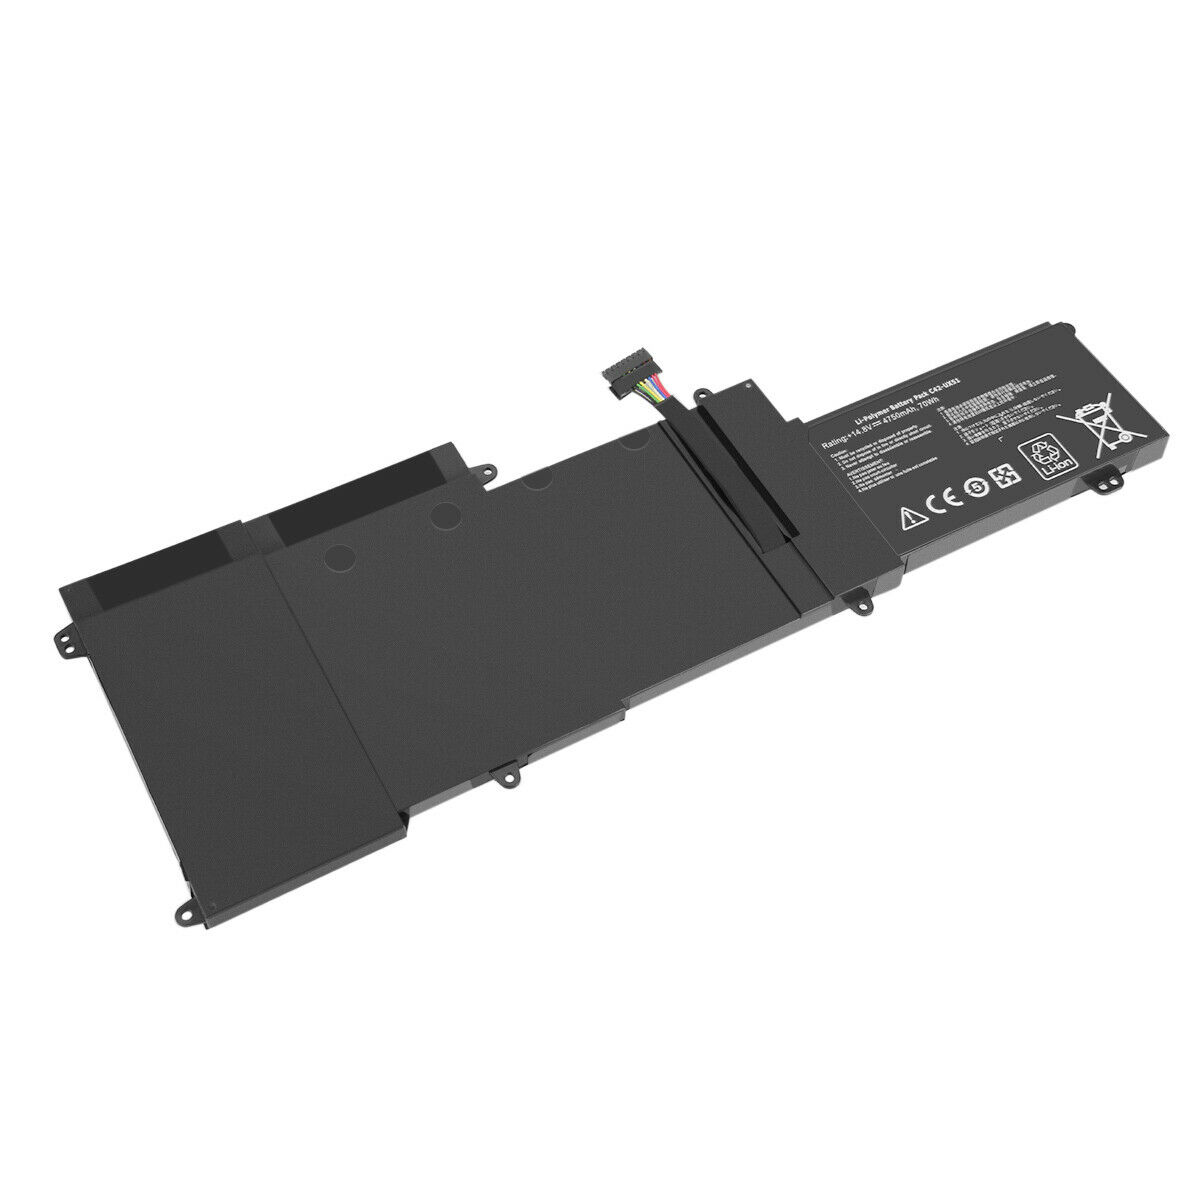 C42-UX51 ASUS ZenBook UX51 UX51V UX51VZ U500 U500V U500VZ kompatibelt batterier